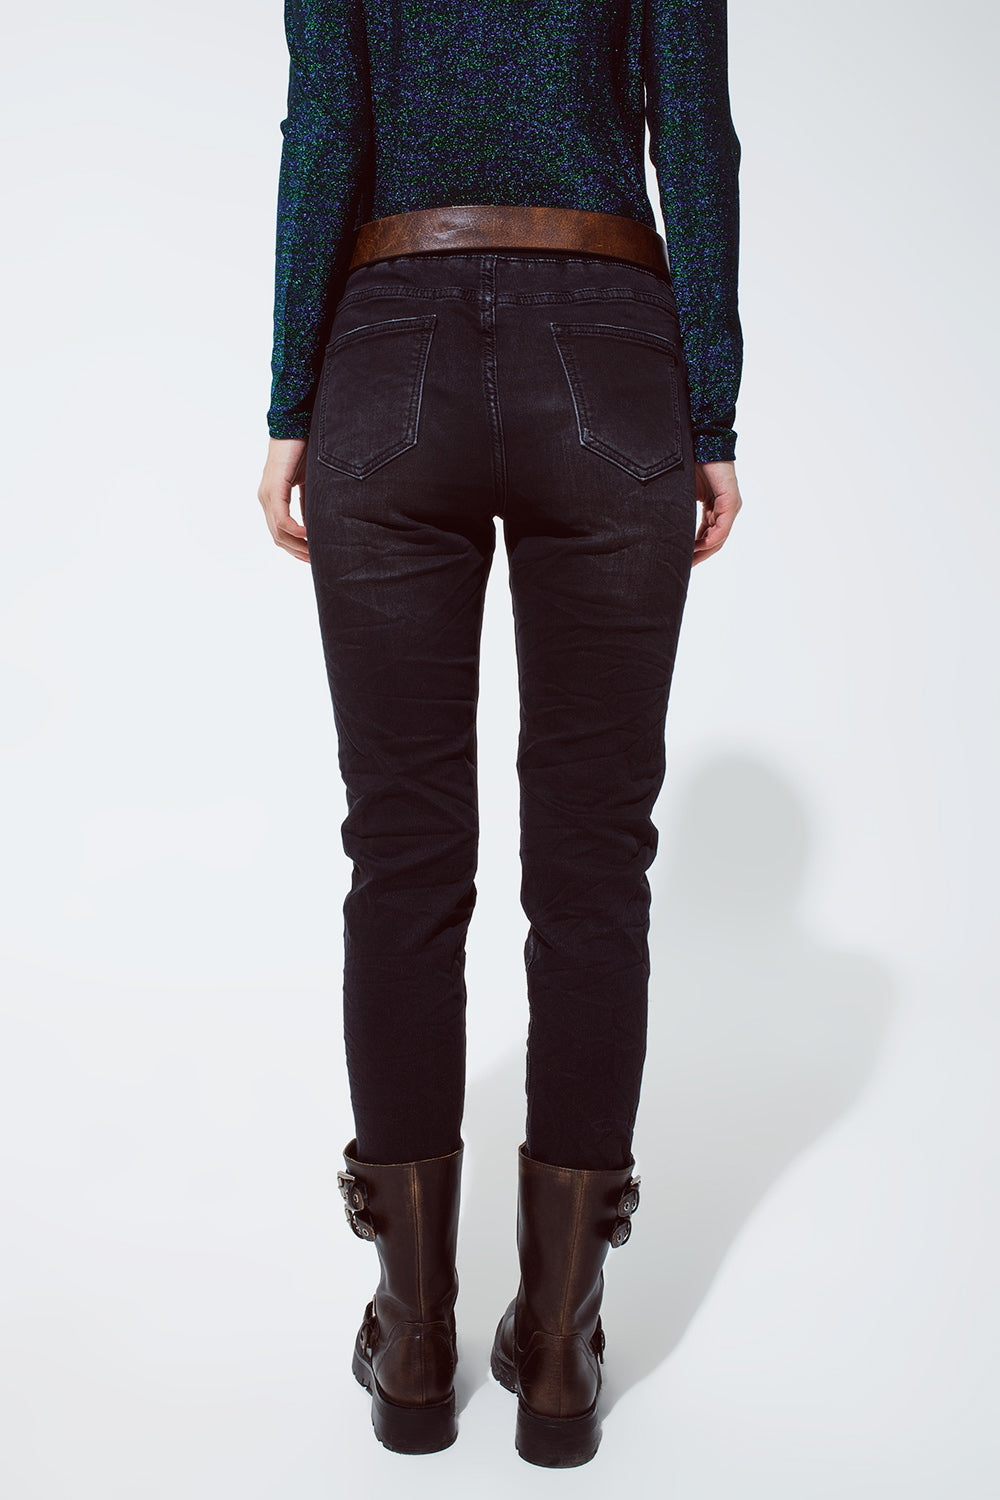 jeans neri con vita elastica e cordoncino